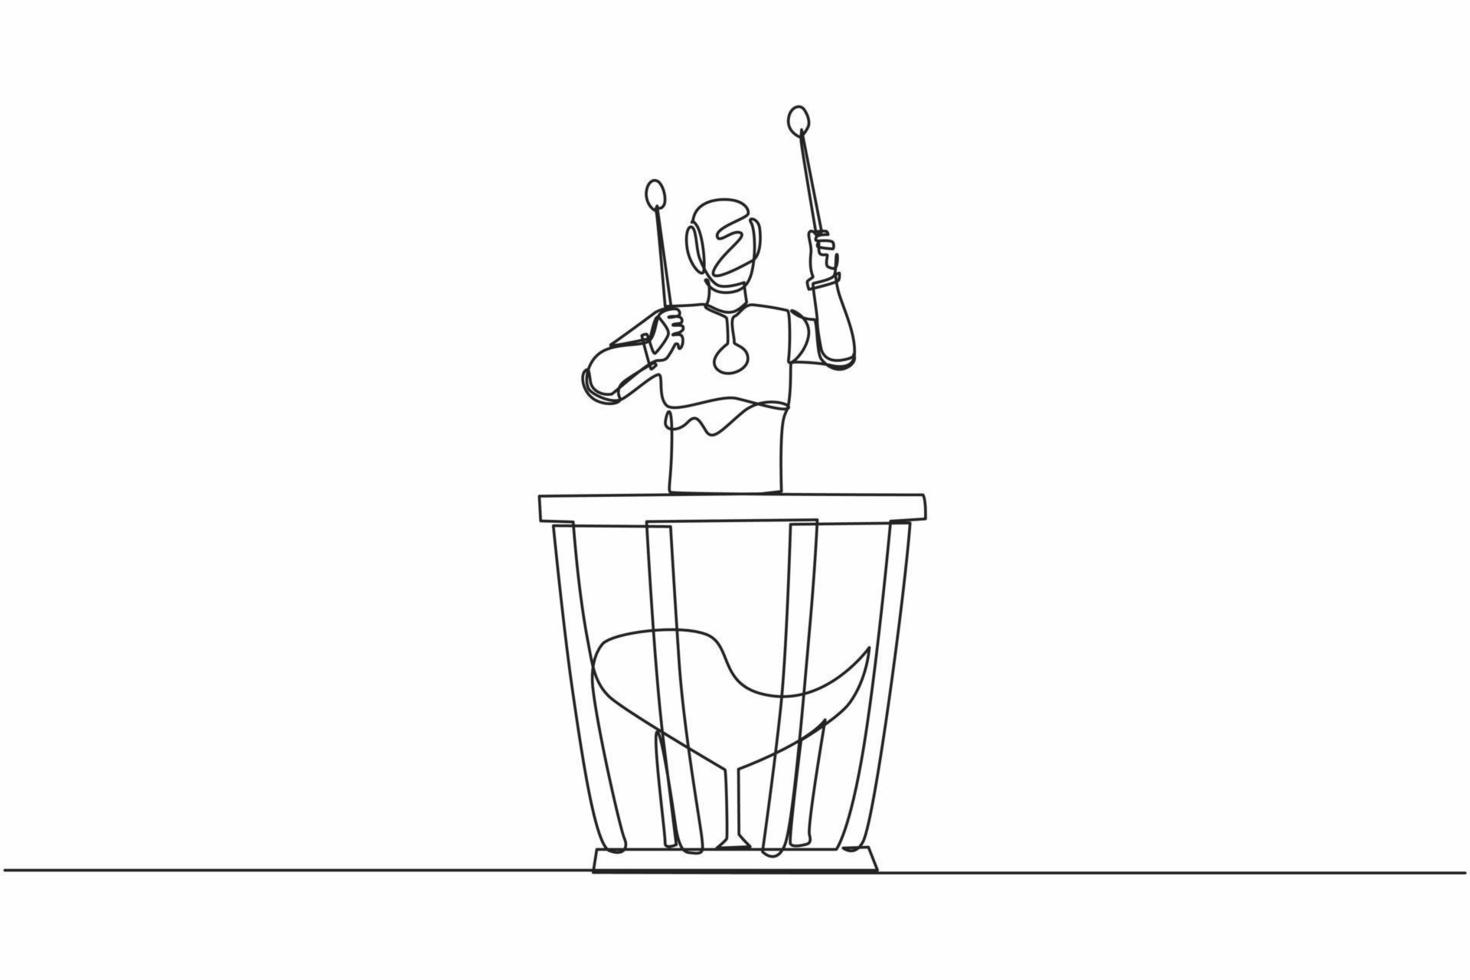 joueur de percussion robot dessinant une seule ligne continue tenant un bâton et jouant des timbales. intelligence artificielle robotique. industrie de la technologie électronique. une ligne dessiner illustration vectorielle de conception graphique vecteur